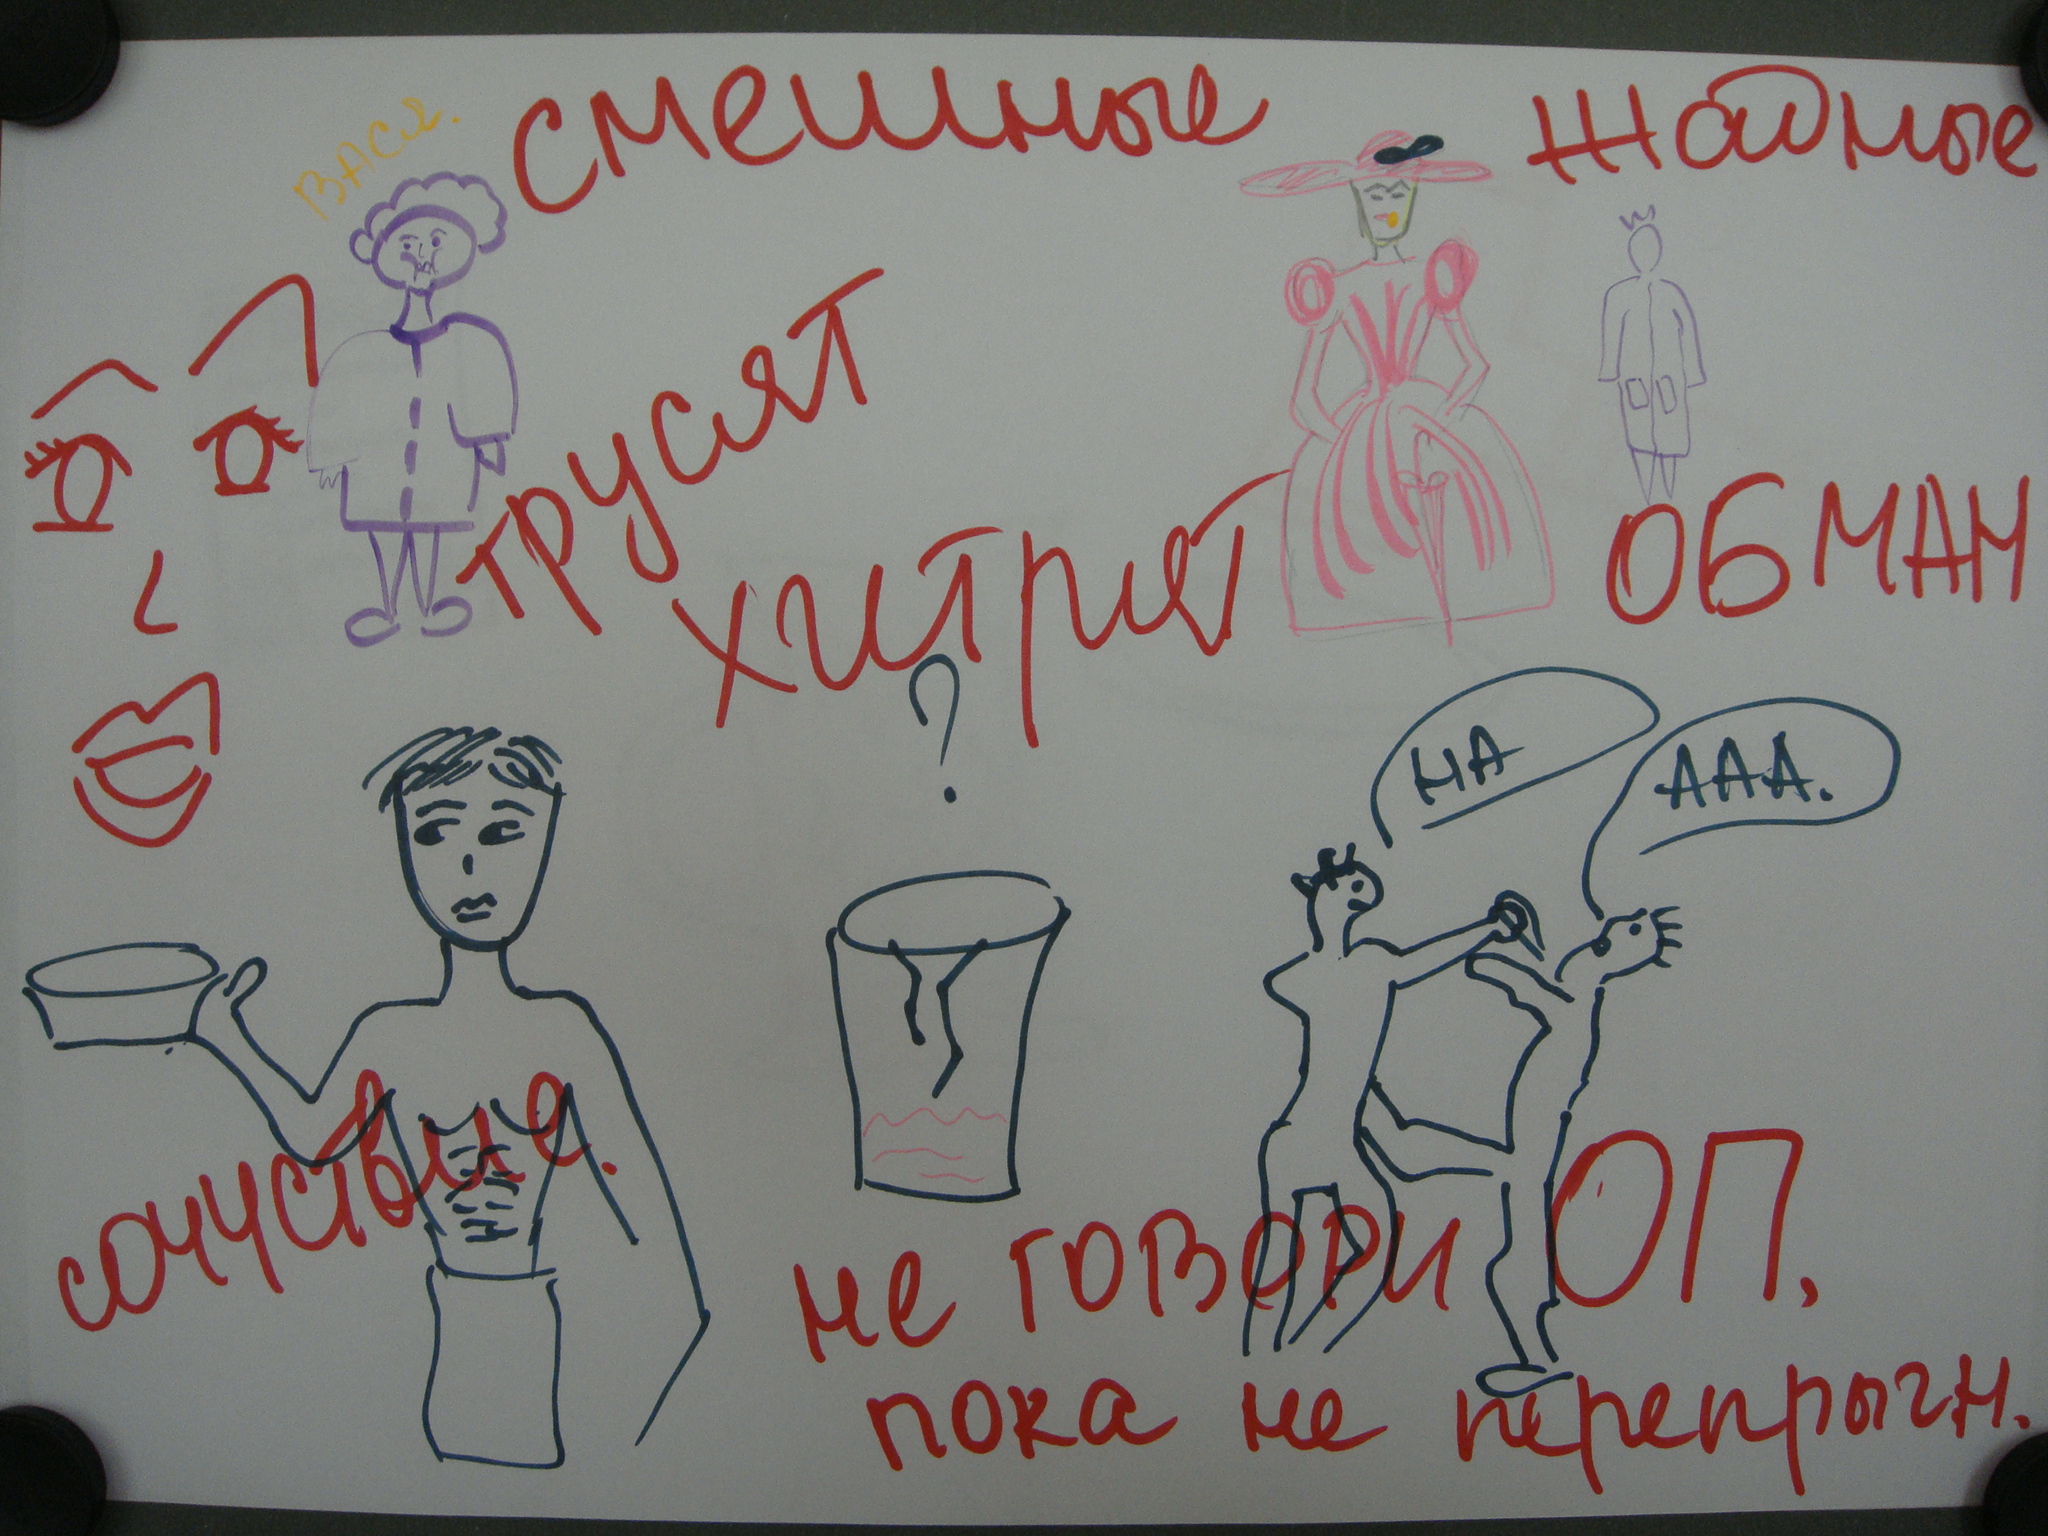 Урок русской литературы в 11 классе по теме: «Смех – дело серьезное?» (современное прочтение рассказов М. Зощенко) (2 часа) с использованием Модулей 3-х уровневых курсов